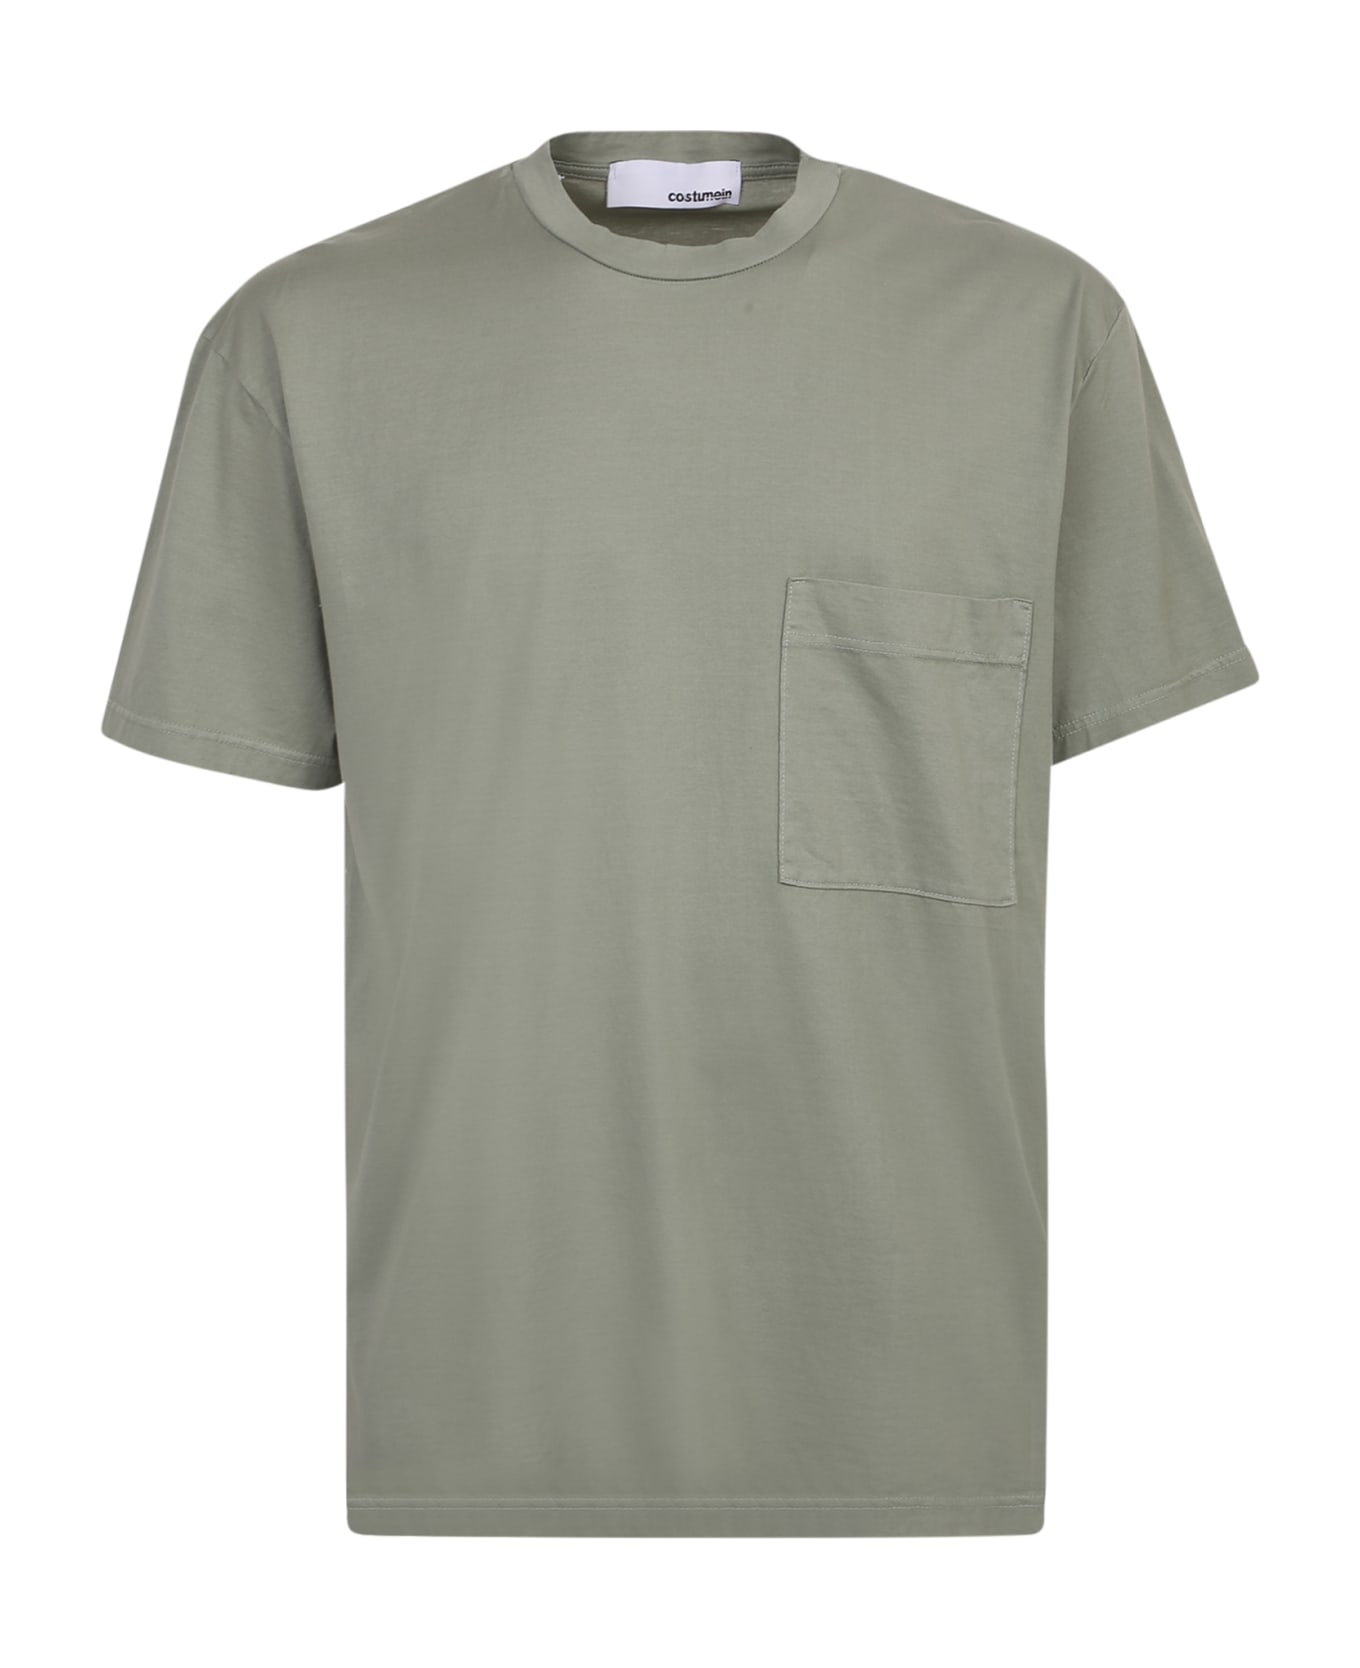 Giuseppe di Morabito William Cotton T-shirt - Green